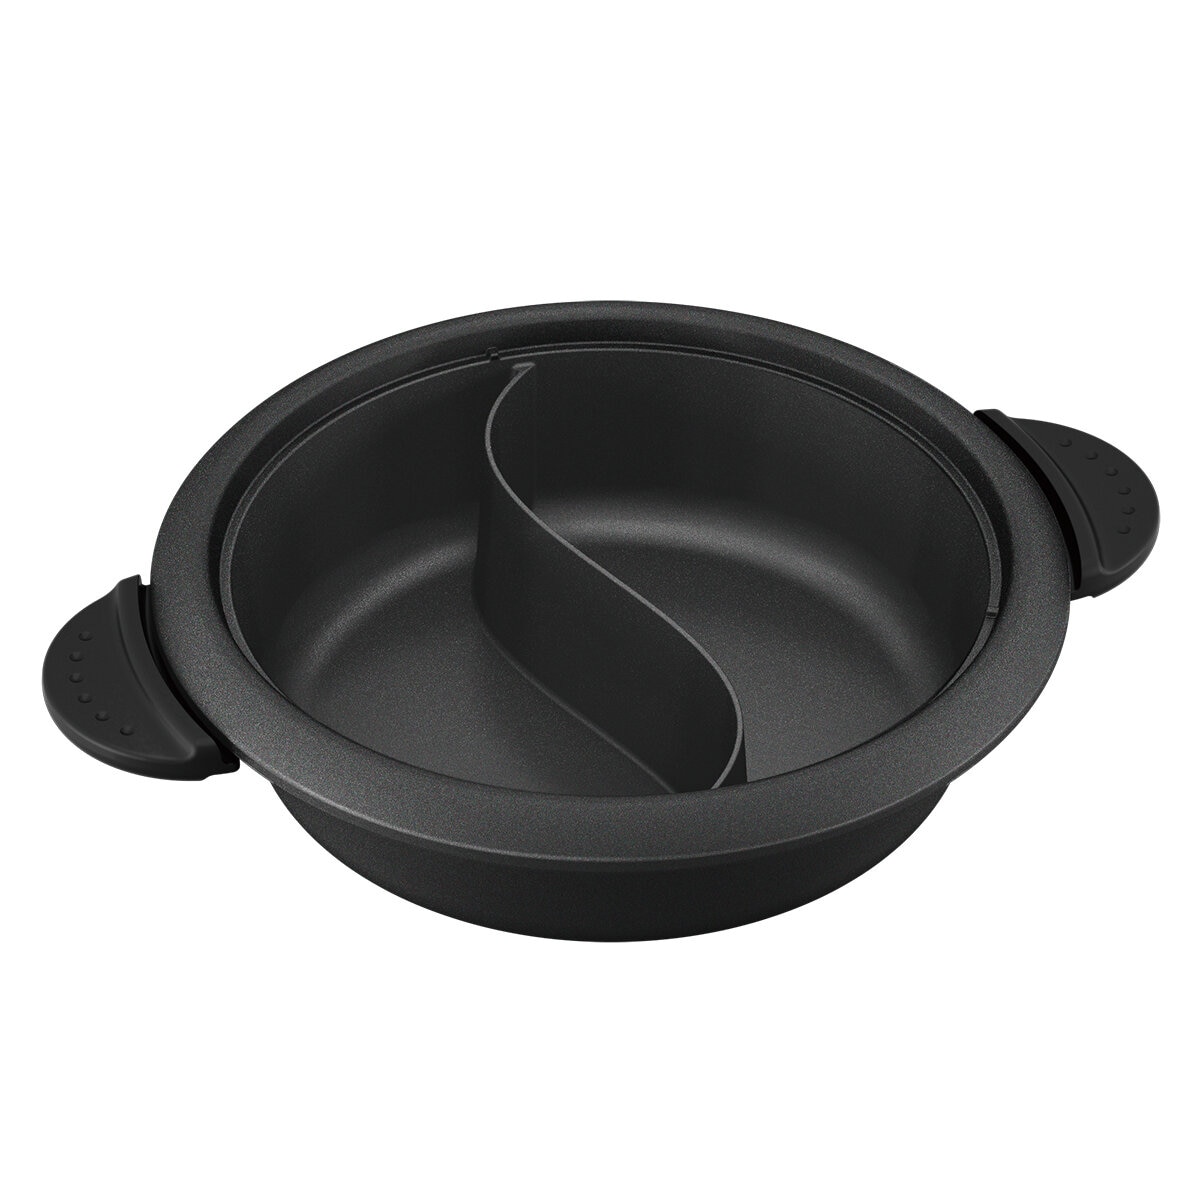 Tescom GPF60 Hot Pot Grill Slow Cooker